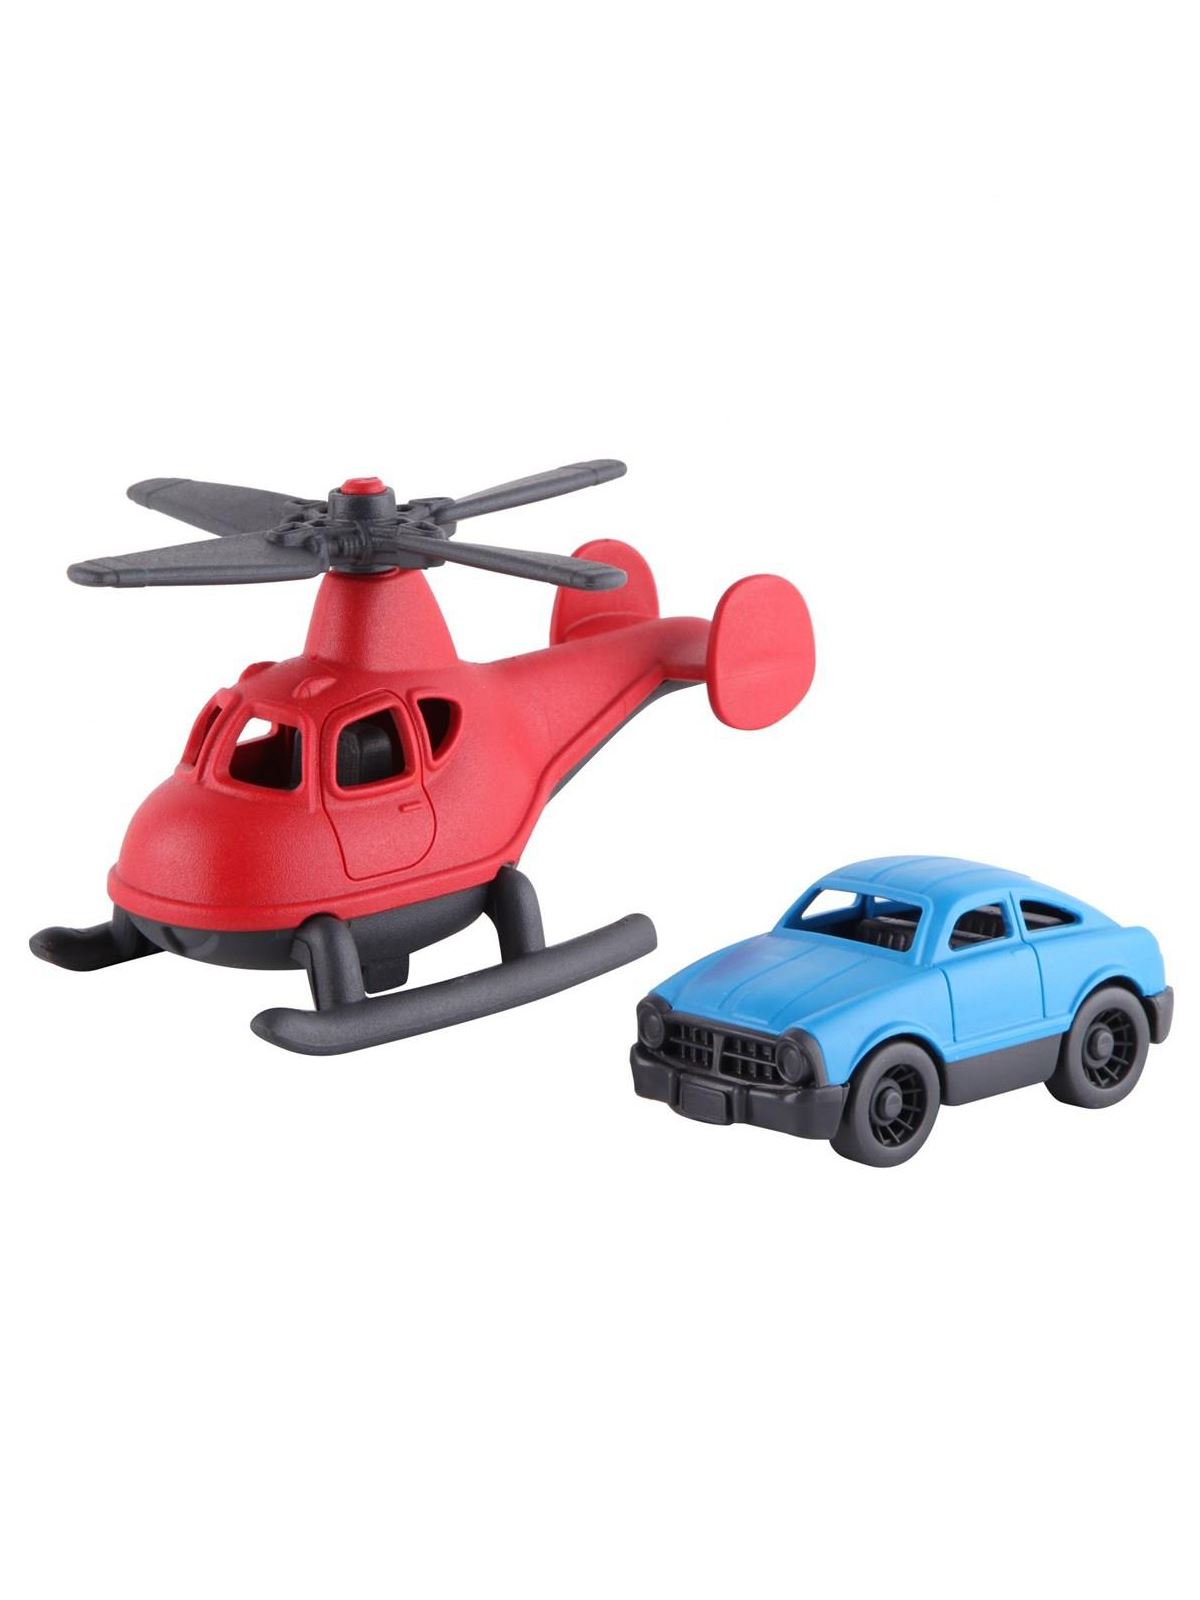 Let's Be Child Minik Taşıtlar Helikopter ve Minik Araba Kırmızı